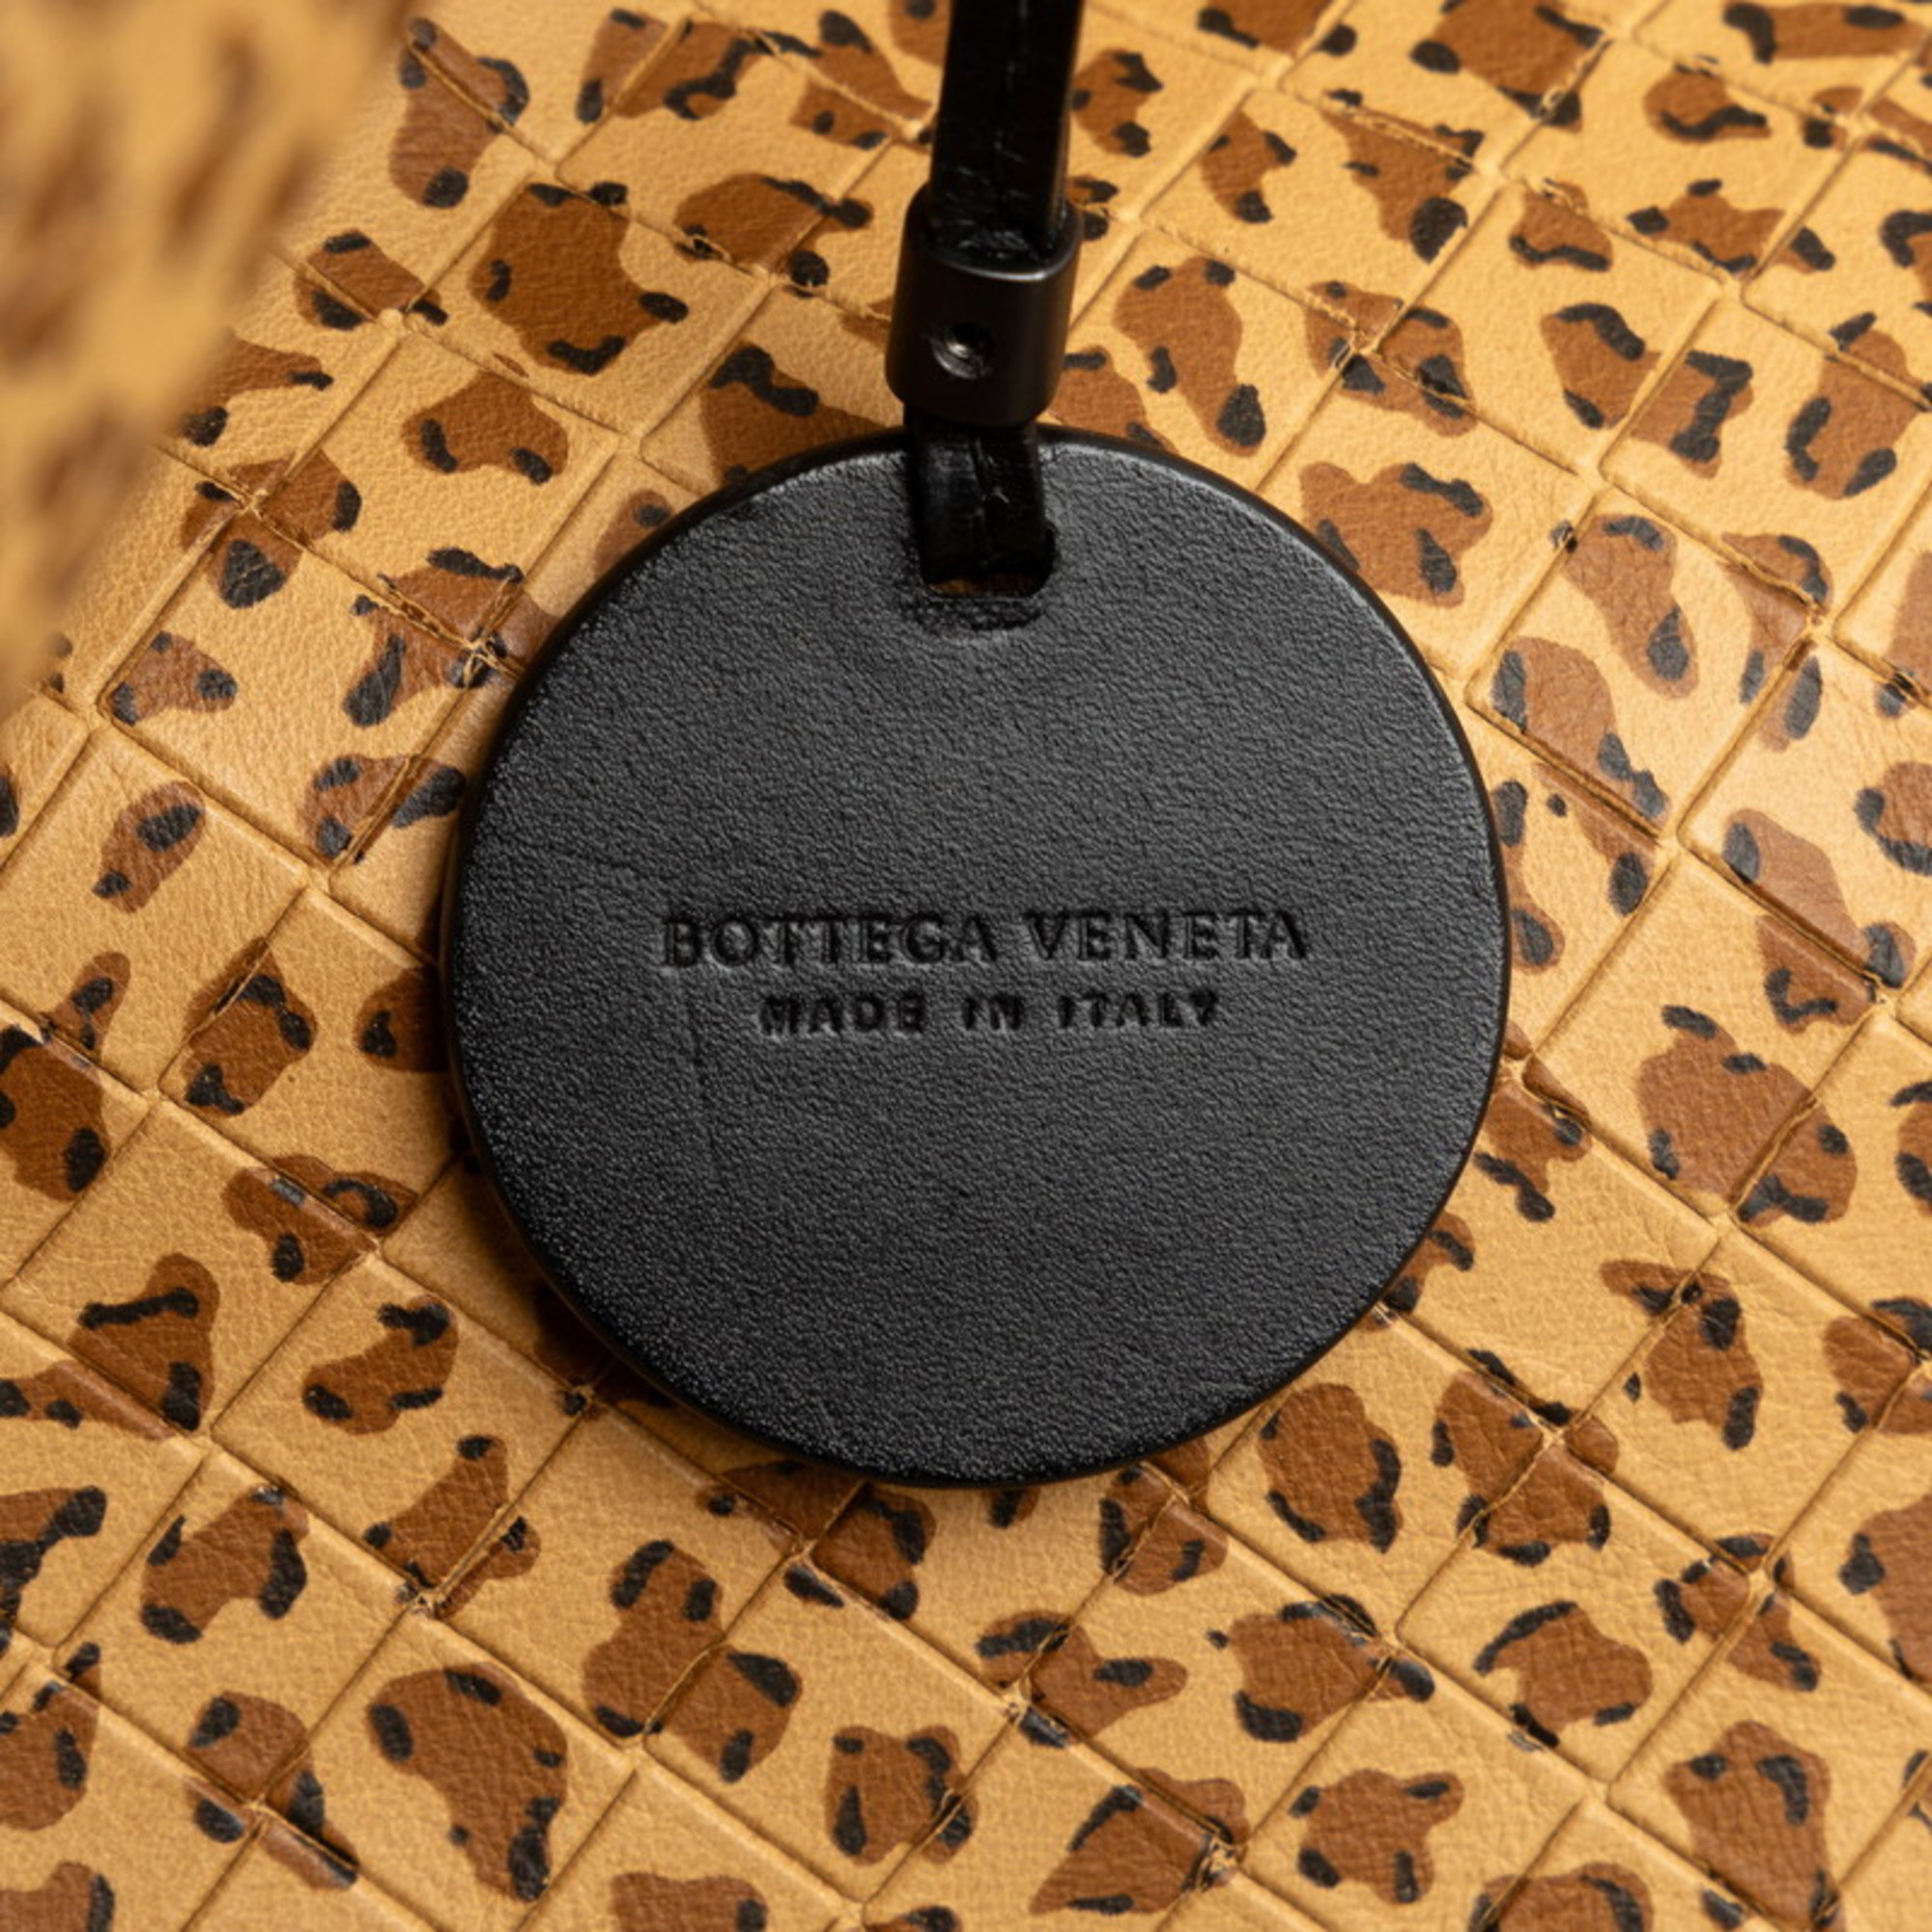 Bottega Veneta Intreccio Mirage Tote Leopard Bag Beige Black Leather Women's BOTTEGAVENETA